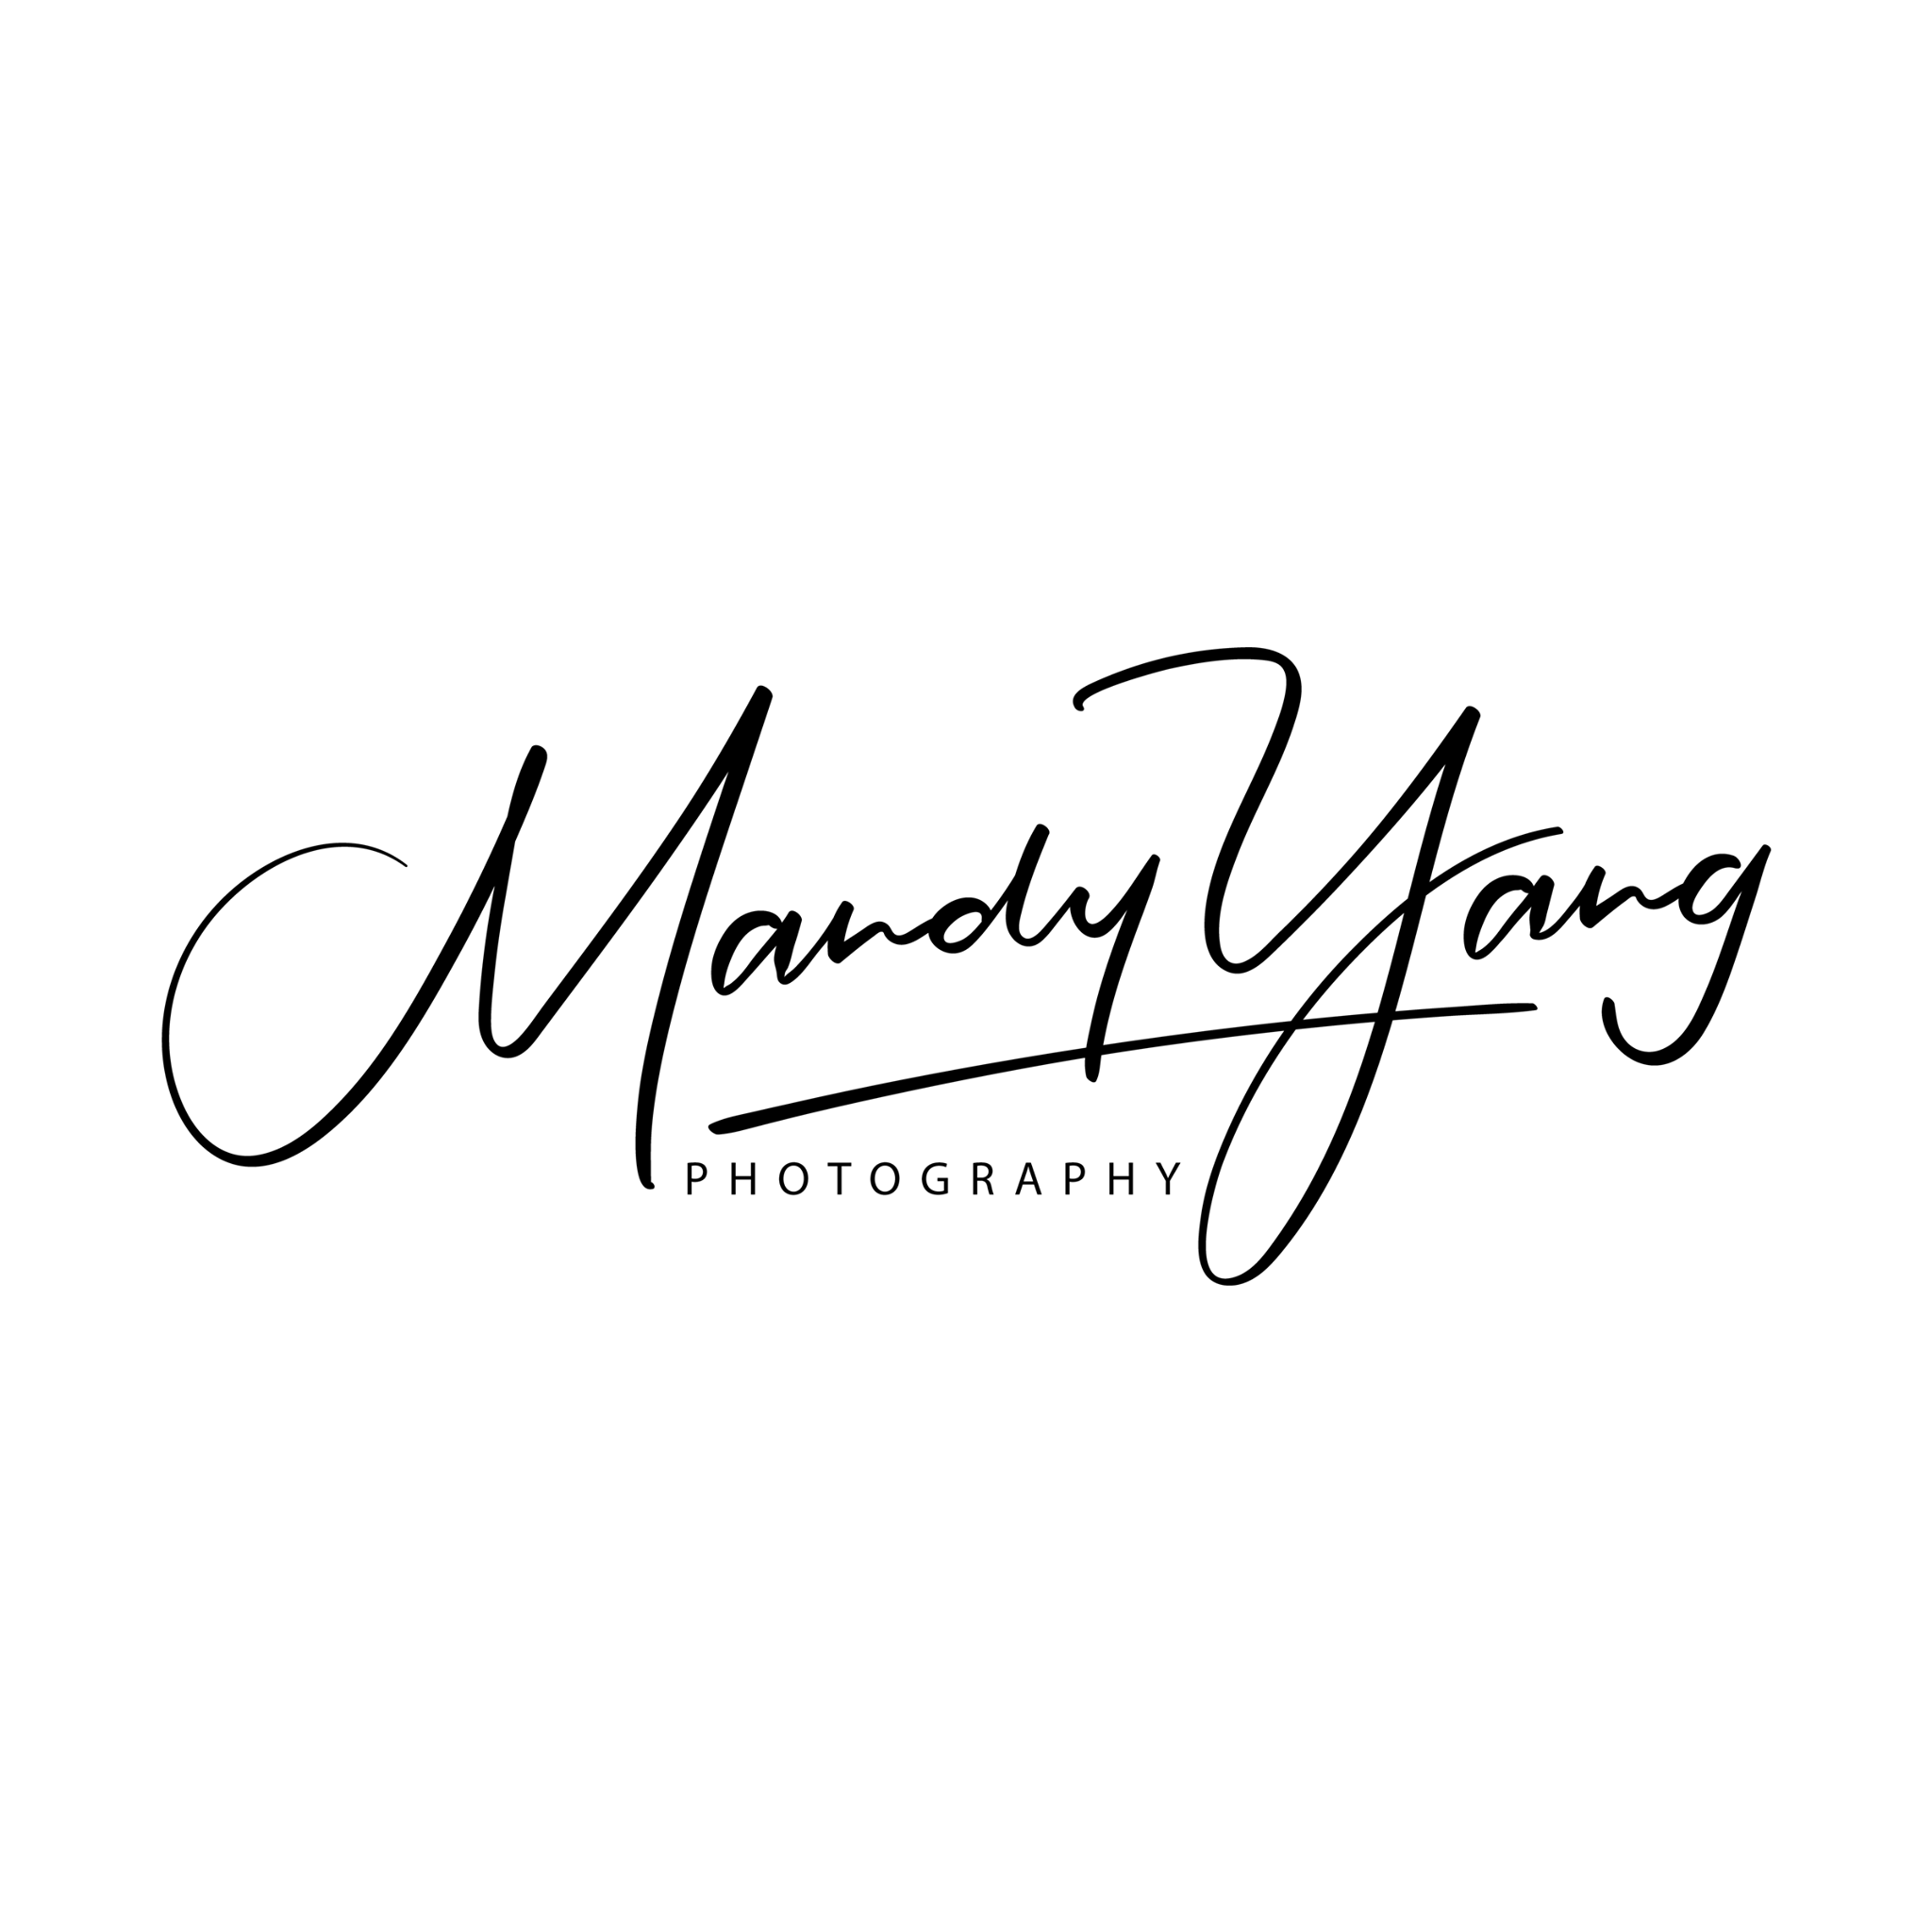 Mandy Yang Photography